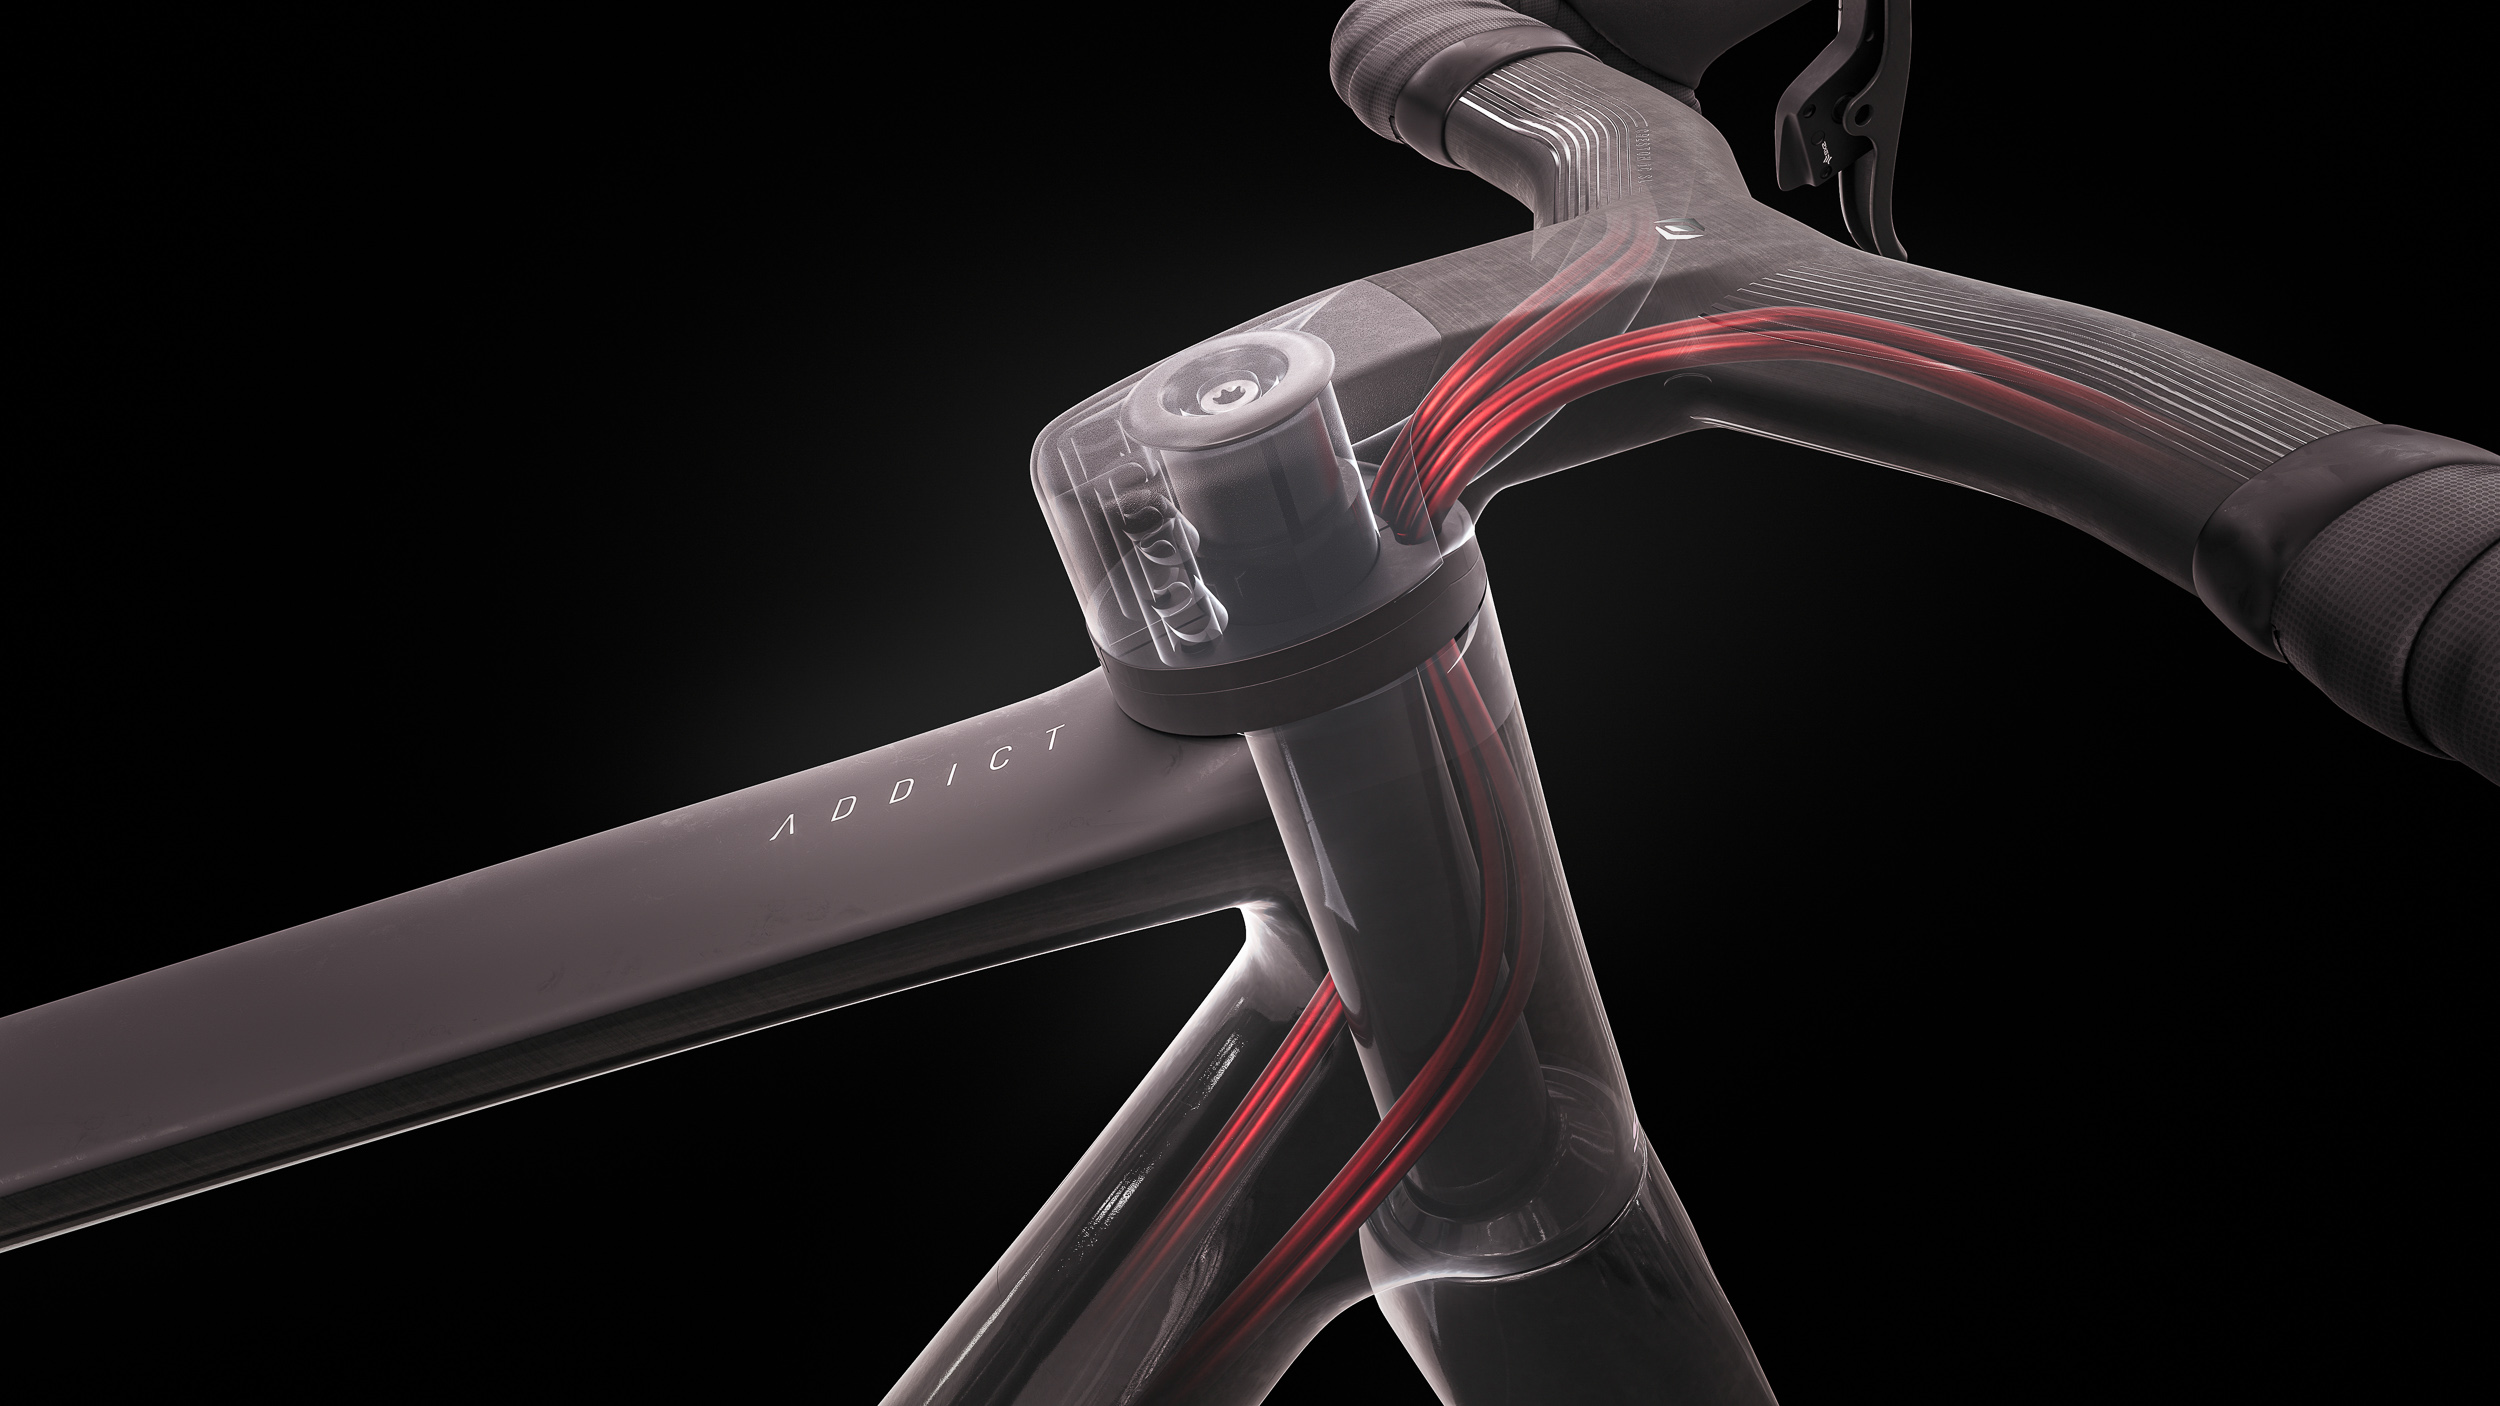 El "Eccentric bicycle fork shaft" patentado por Scott crea espacio para todos los cables y conducciones